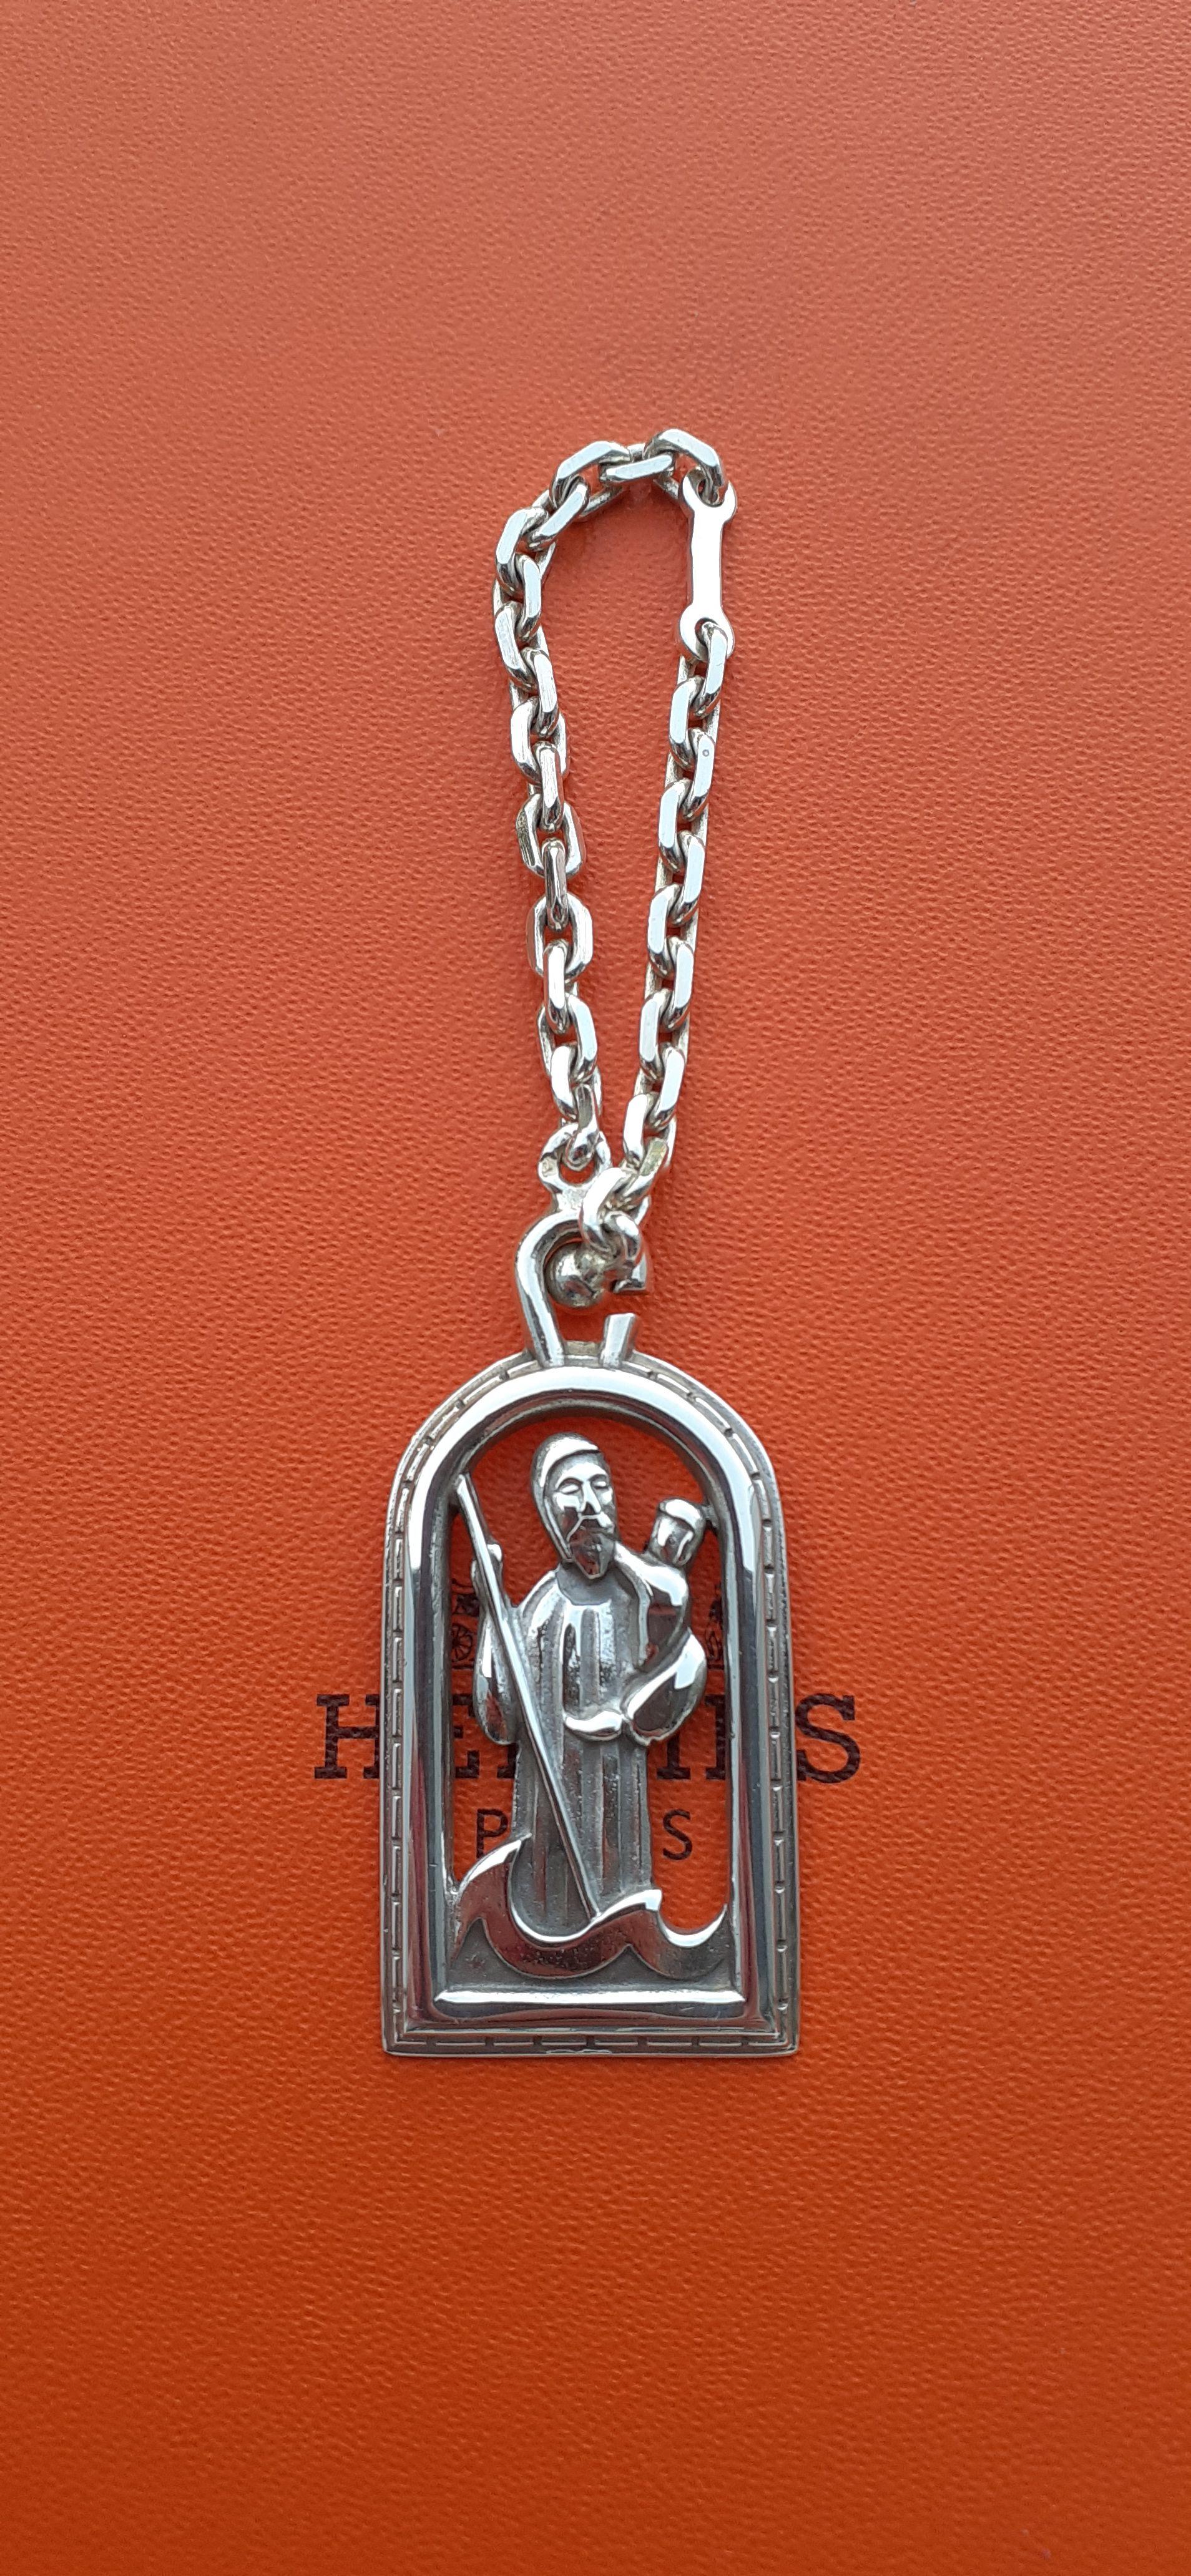 Rare porte-clés Hermès authentique

Représente Saint Christophe, un saint du christianisme. Christophe signifie 